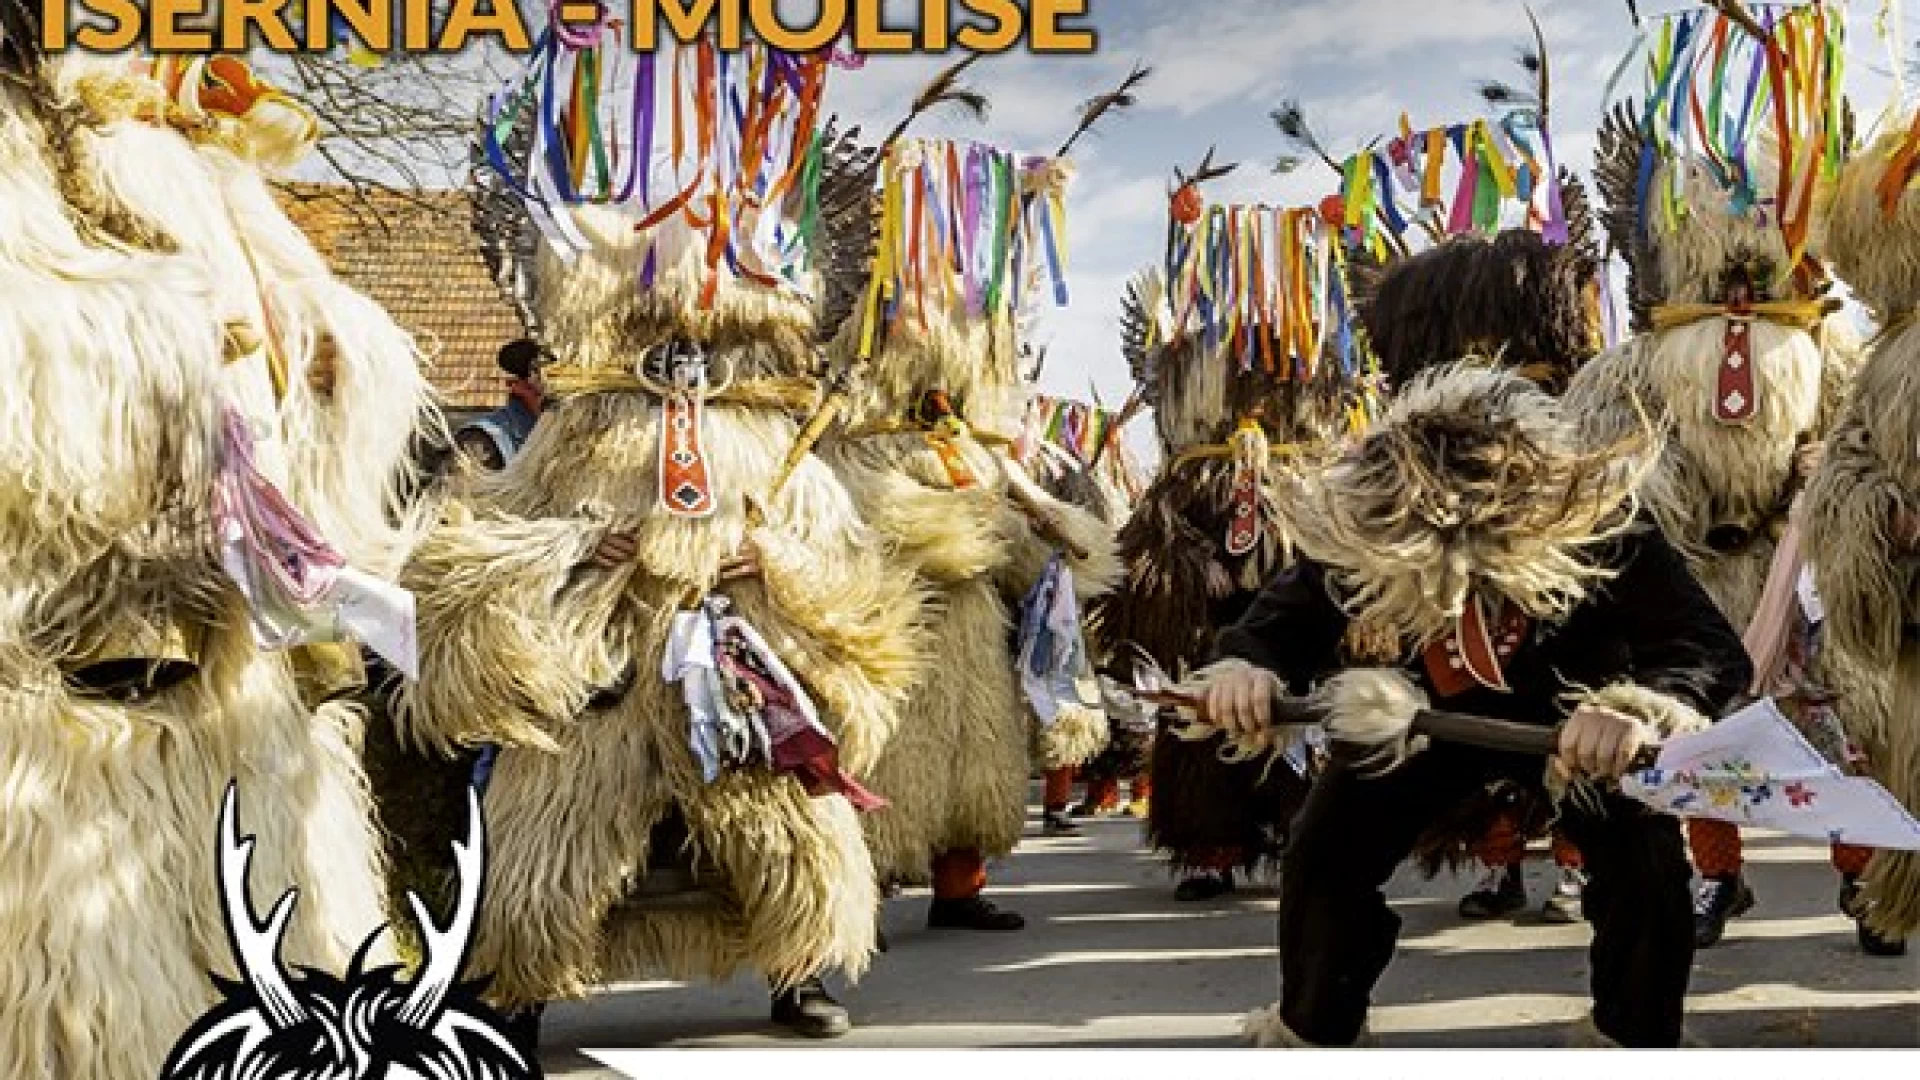 Carnevale Europeo delle Maschere Zoomorfe, il programma completo della manifestazione di Isernia.